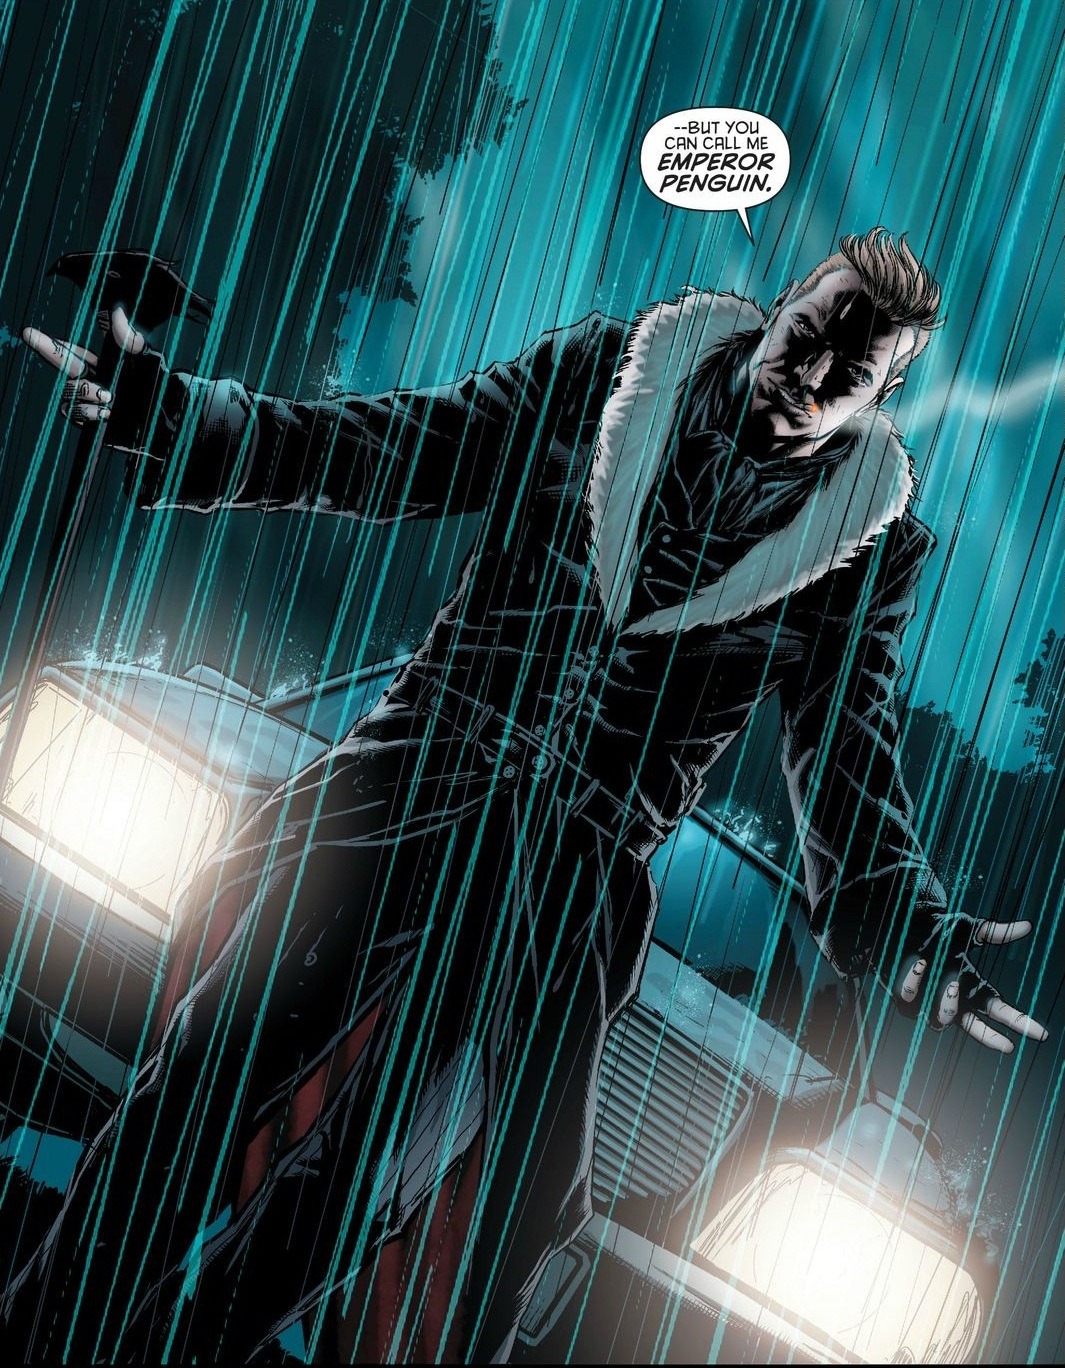 From Detective Comics (Vol. 2) #15 (2013)